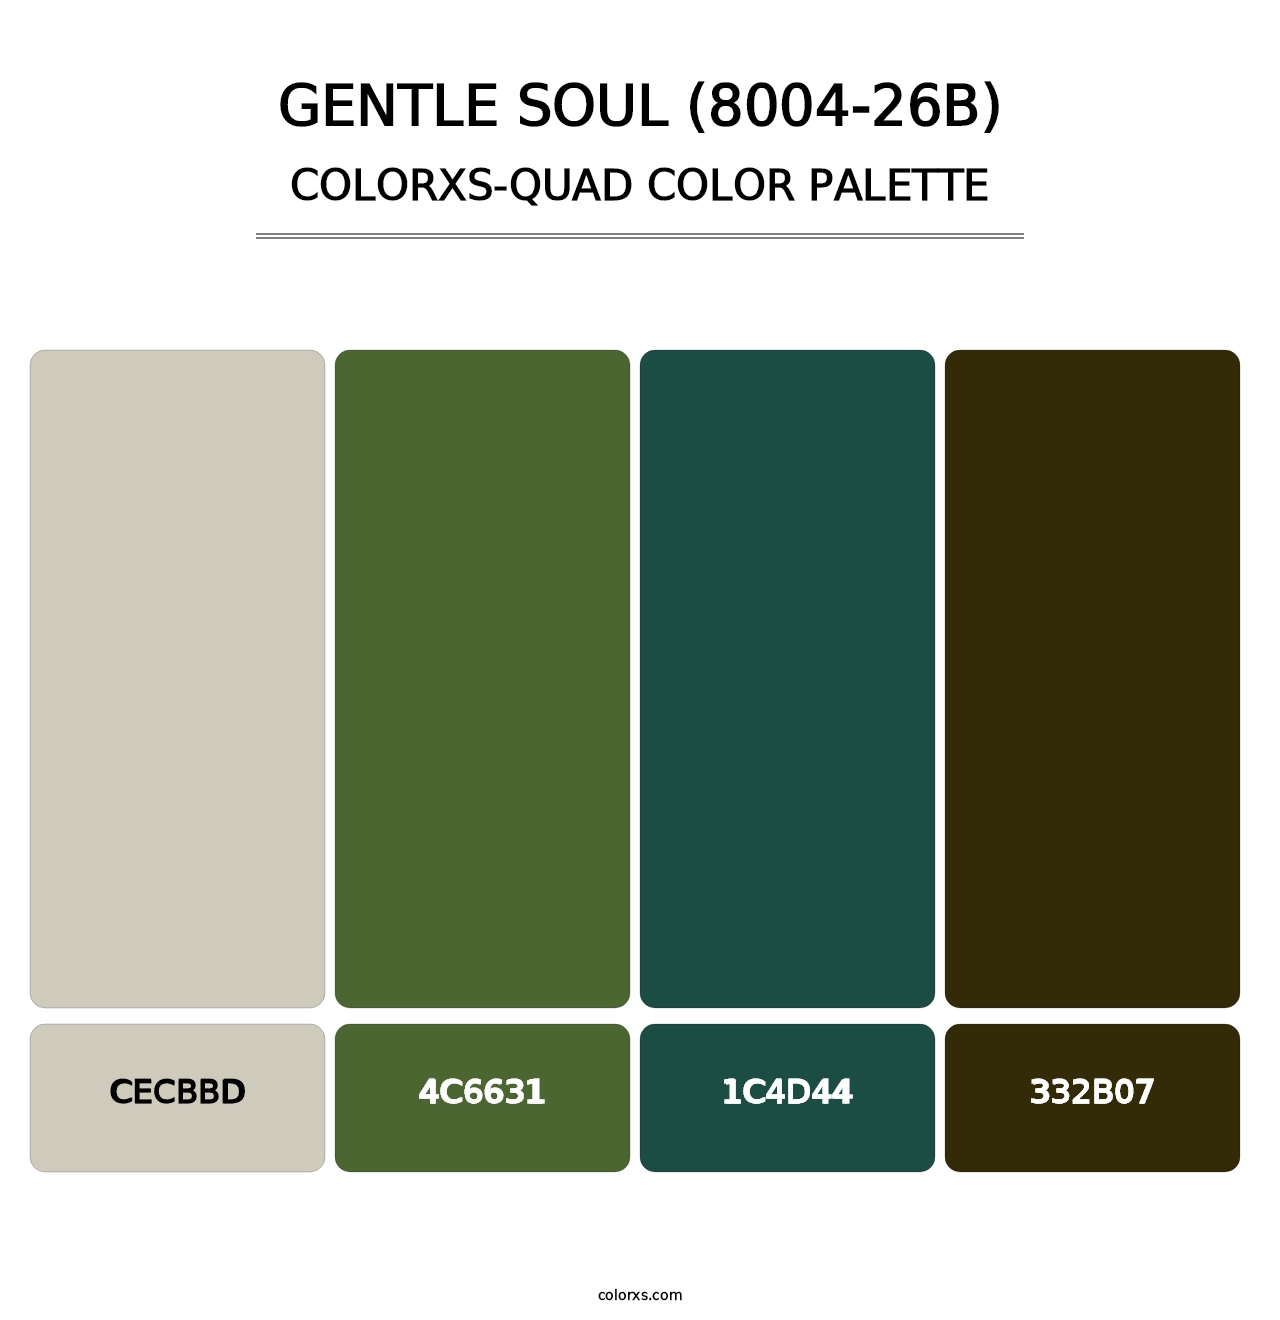 Gentle Soul (8004-26B) - Colorxs Quad Palette